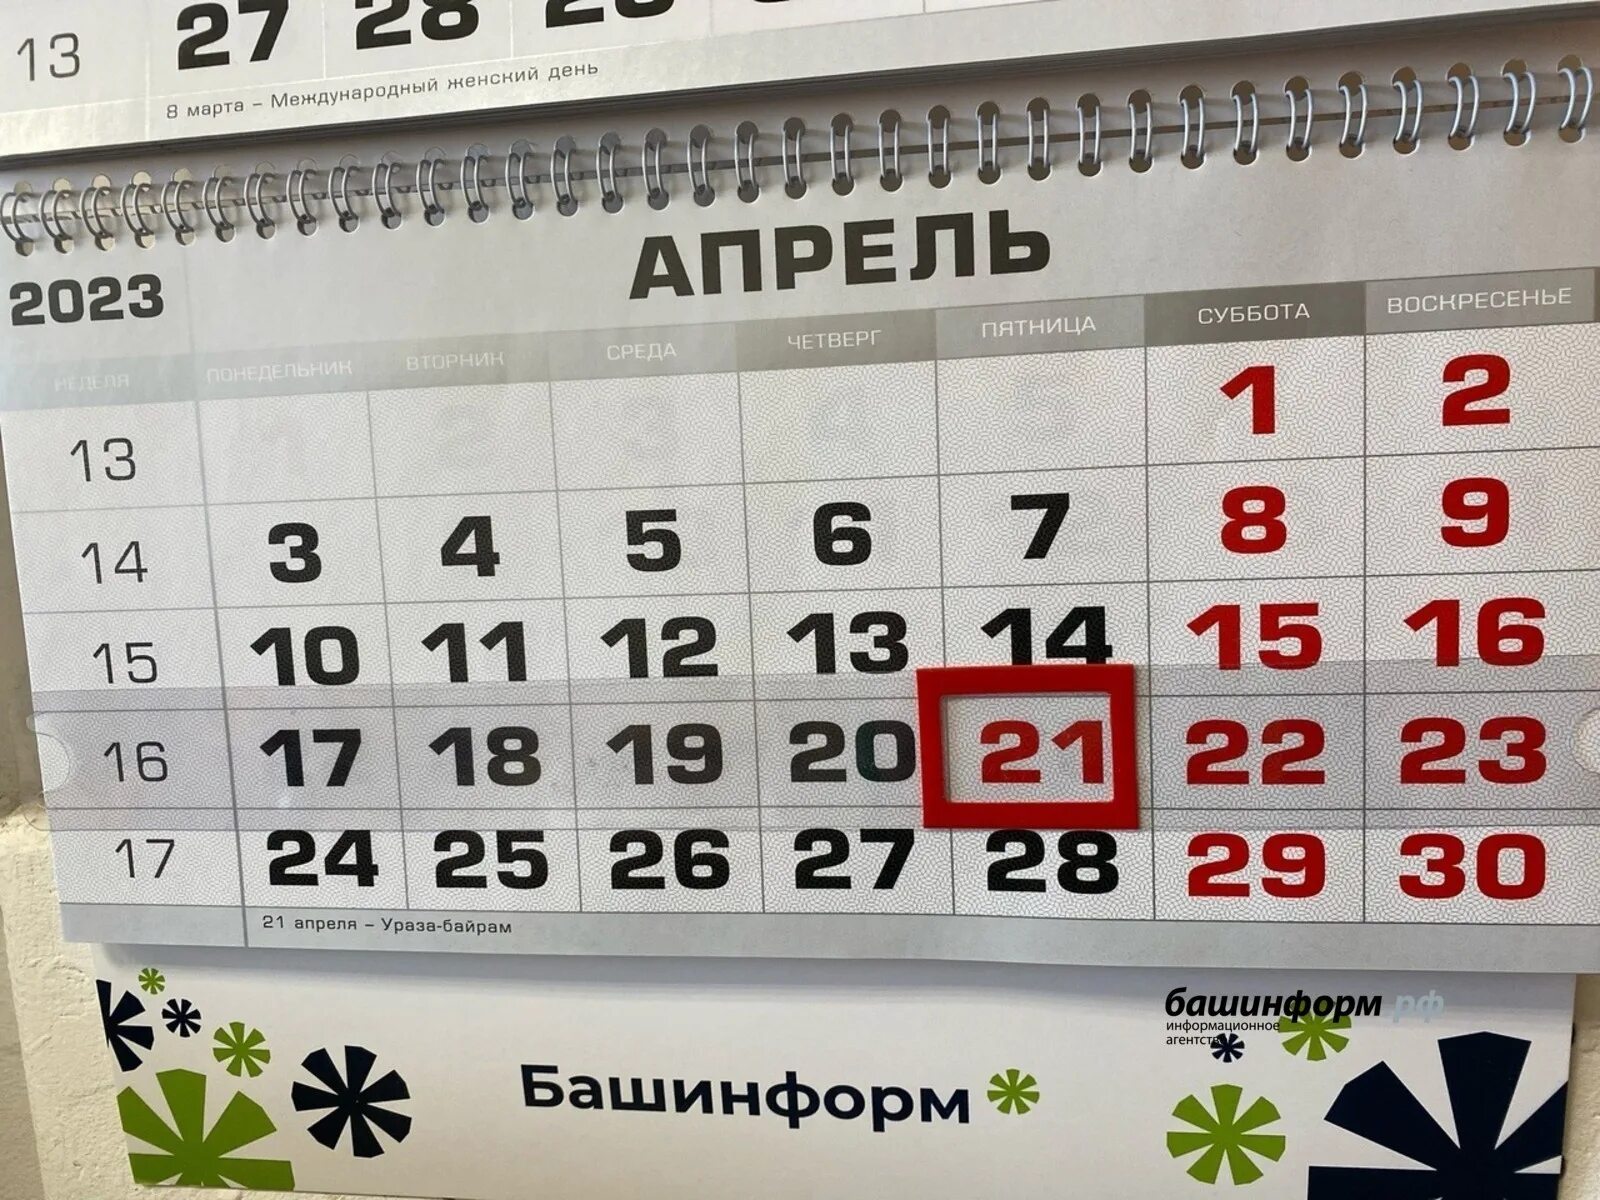 27 апреля короткий день или нет. Праздники в апреле 2023 выходные. Выходные дни в апреле. Календарь апрельских праздников. Праздничные дни в апреле 2024 в Башкирии.